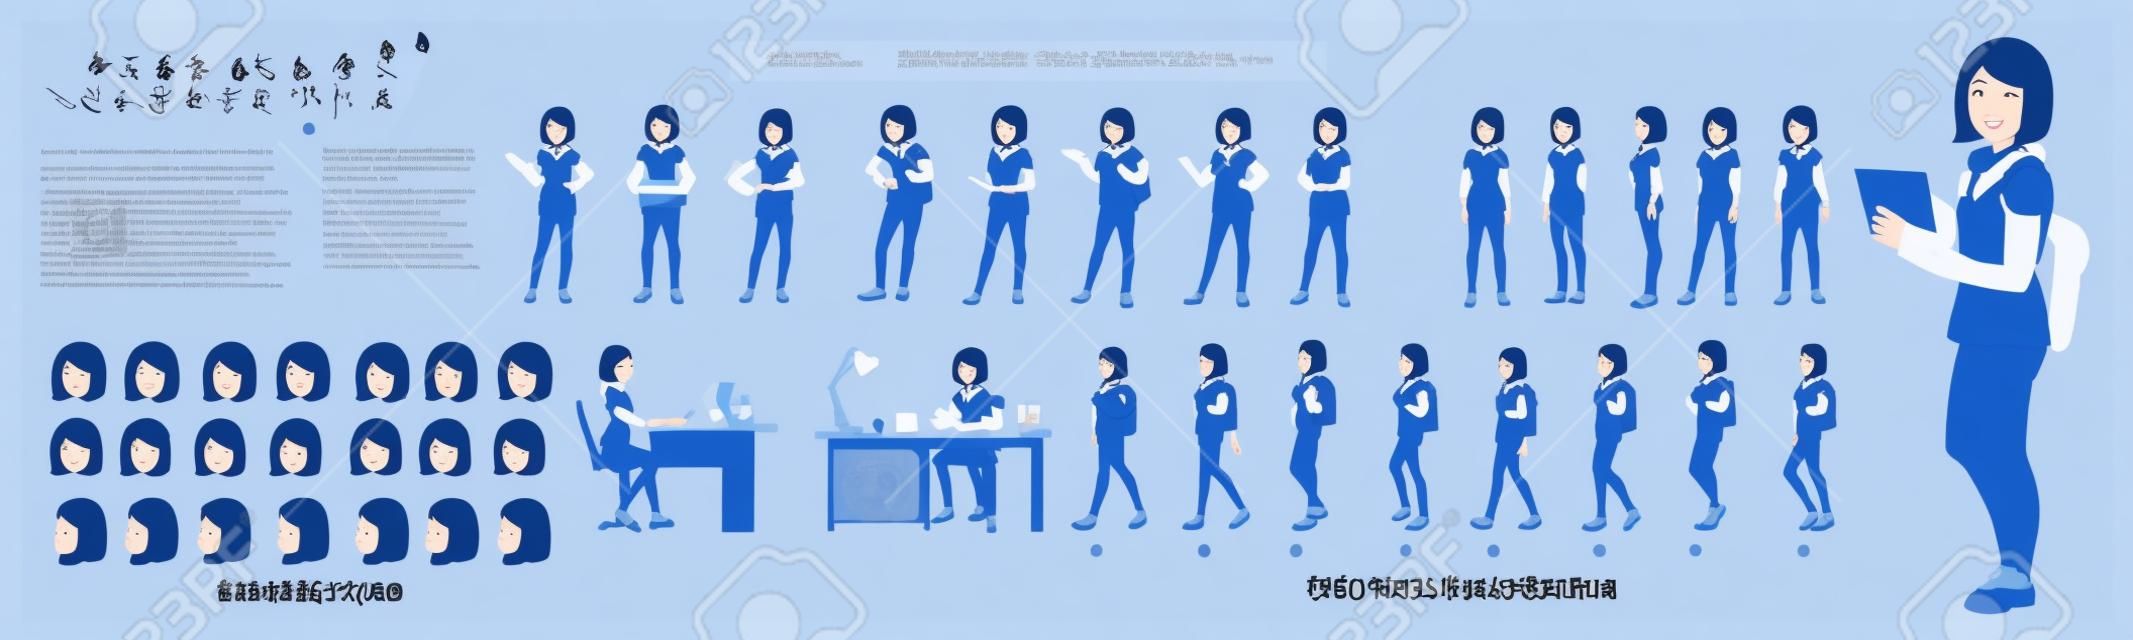 Arkusz modelu postaci studentki azjatyckiej z animacją cyklu spacerowego. projekt postaci dziewczyny.